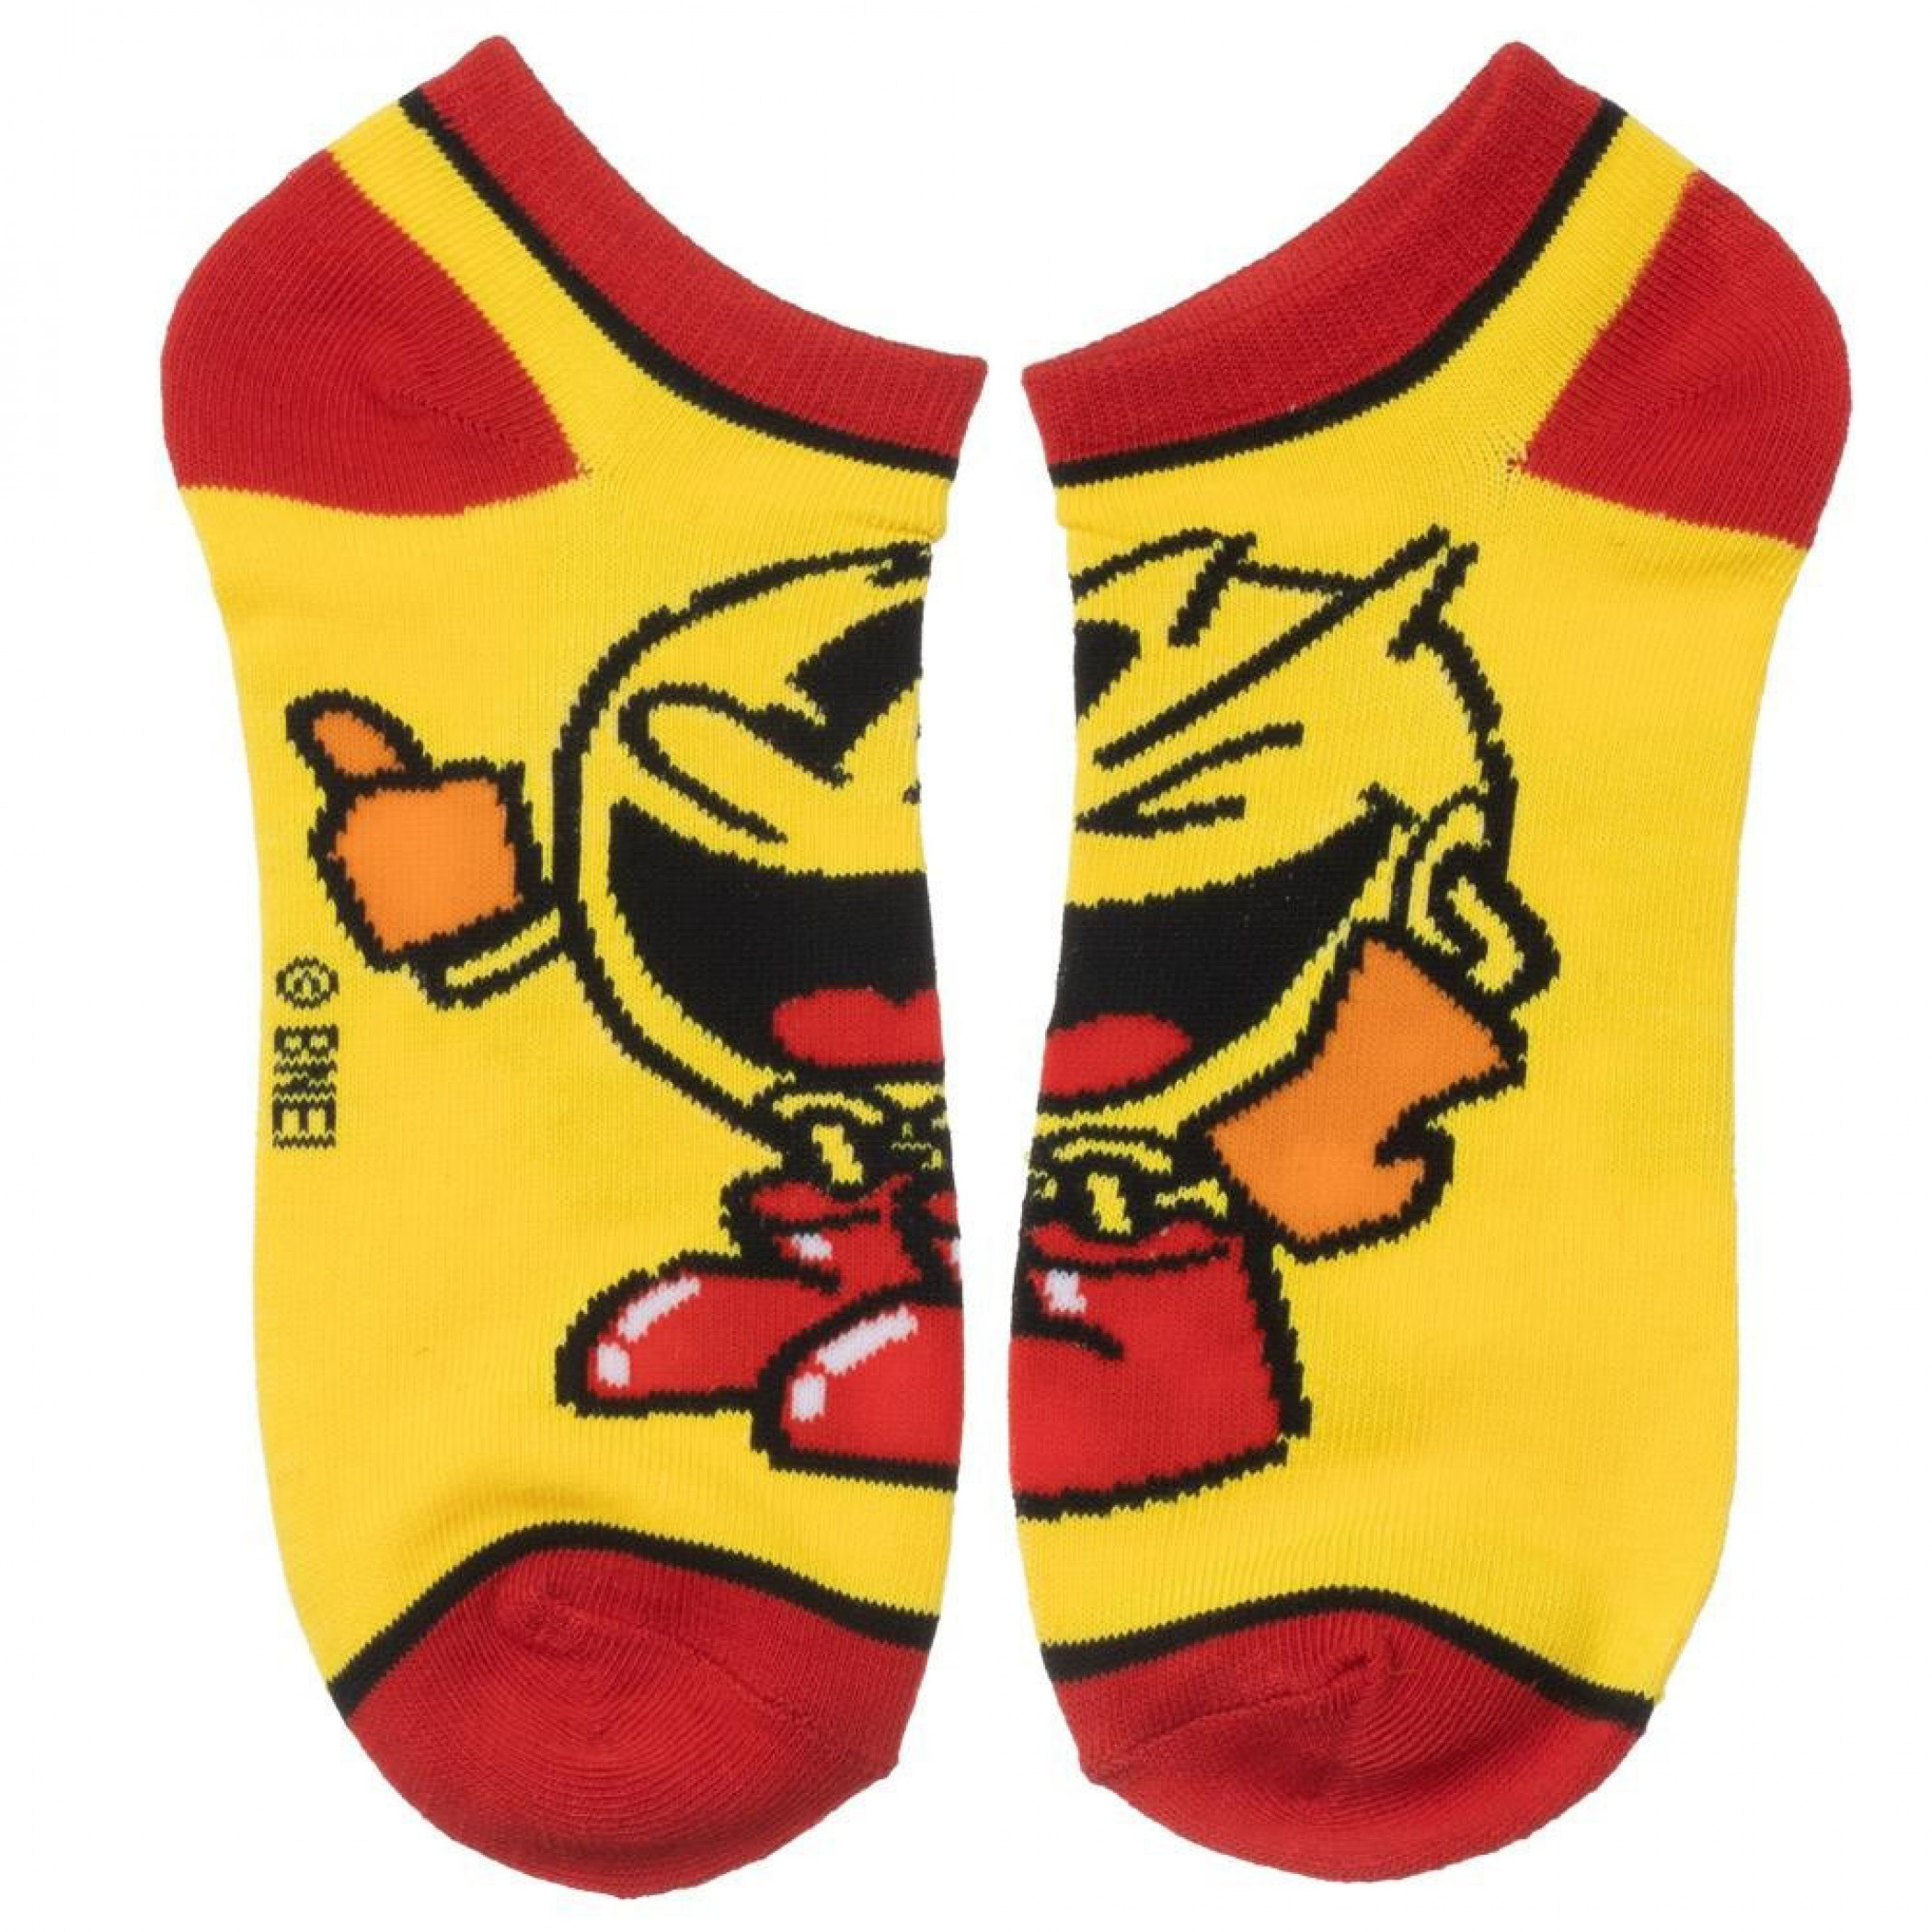 Pac-Man 5 Pair Ankle Socks Pack